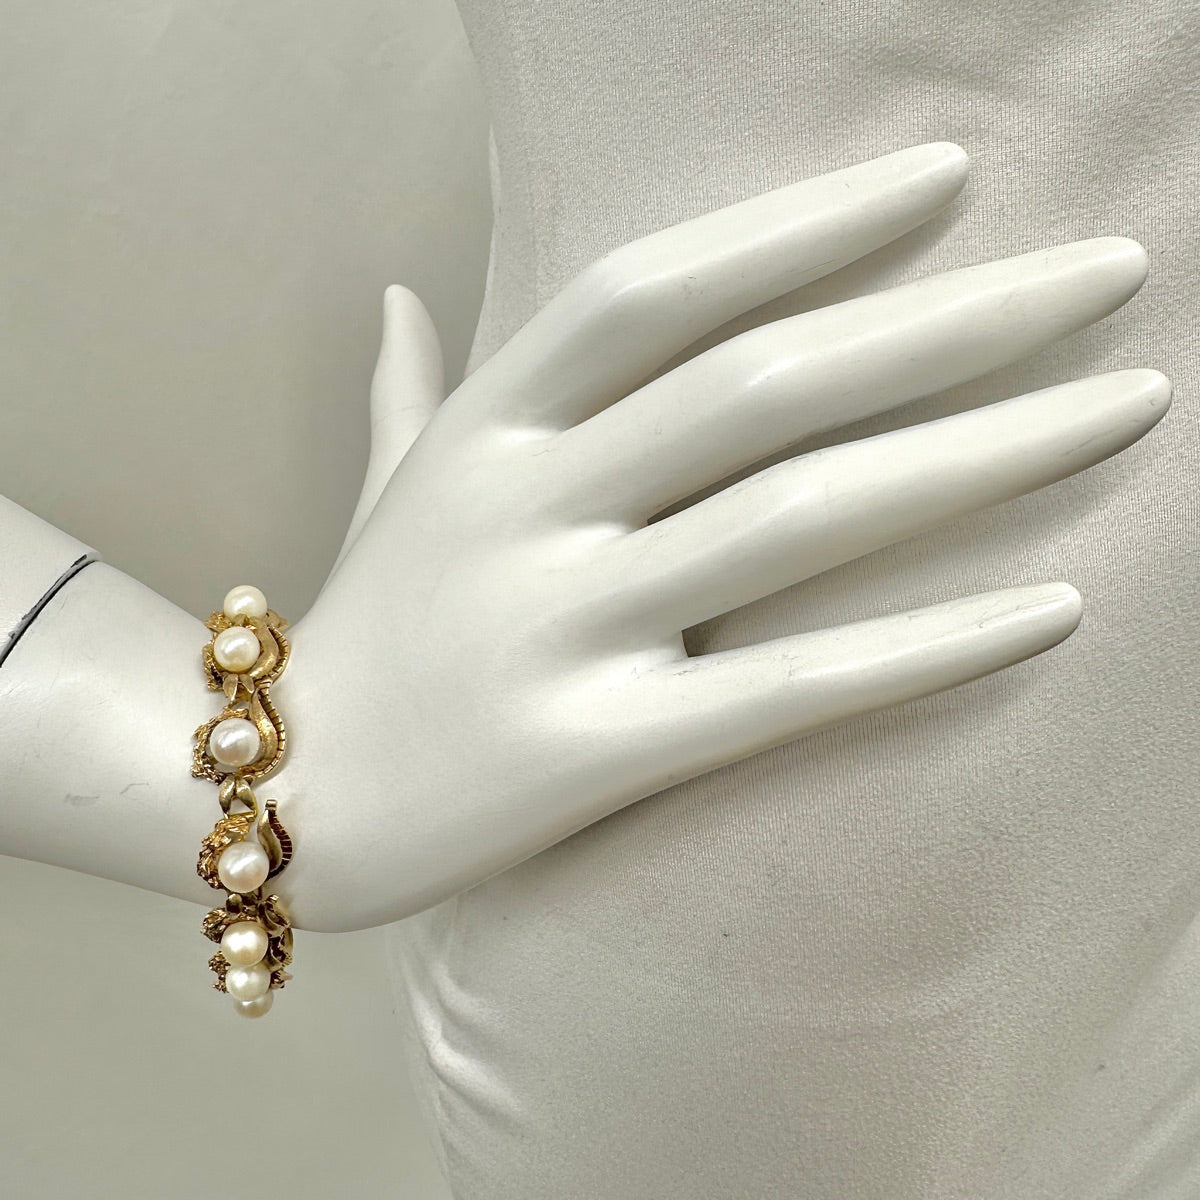 14K Gold Vintage Bracelet with Pearls